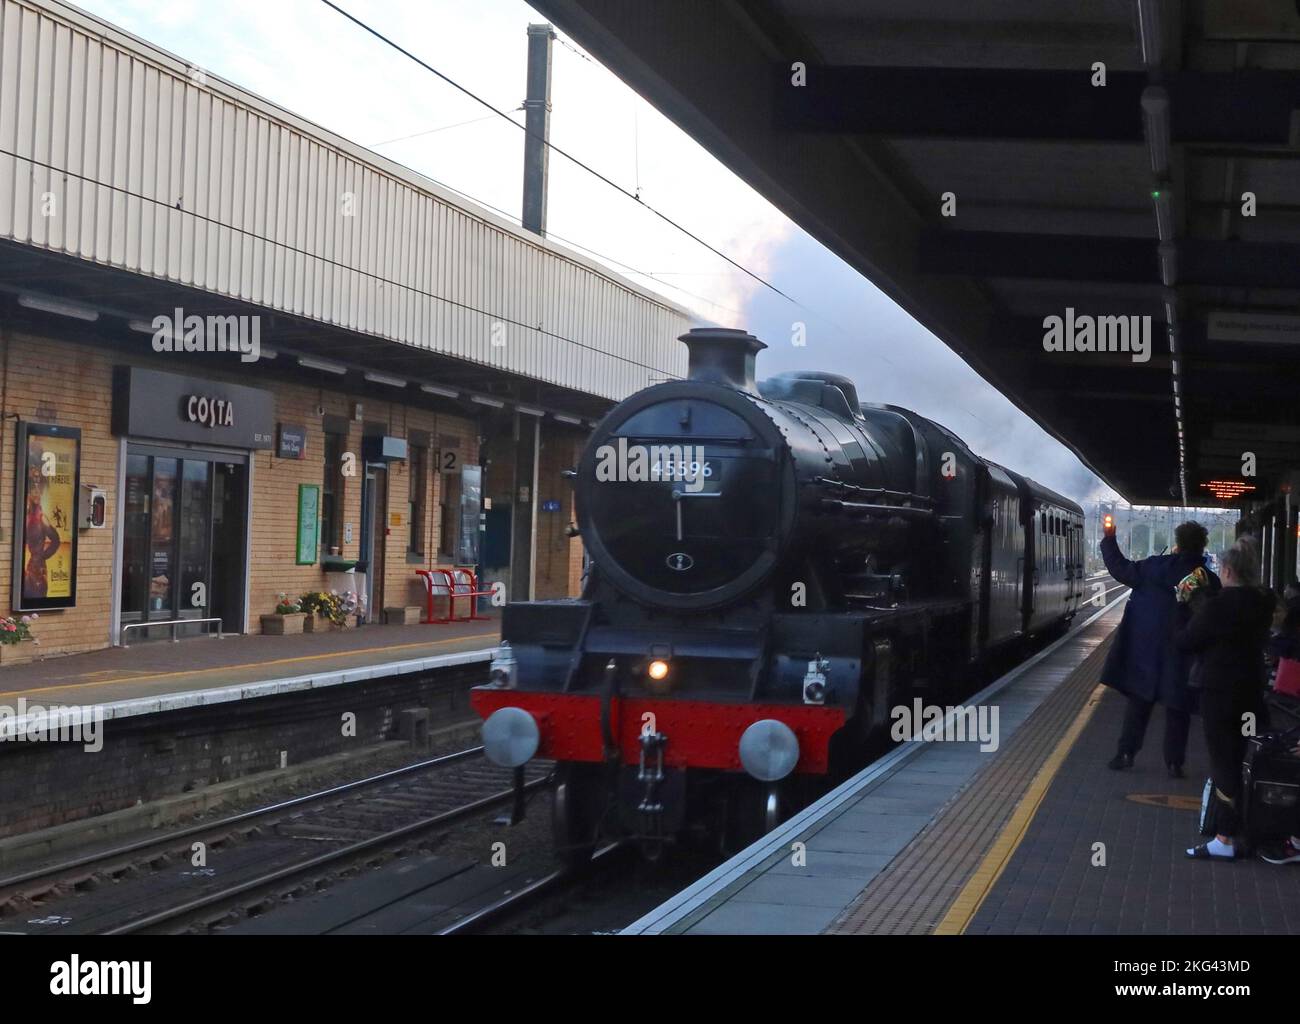 Locomotiva a vapore britannica 45596 conservata che attraversa Bank Quay, stazione ferroviaria, Warrington , Cheshire, Inghilterra, UK,WA1 1LW Foto Stock